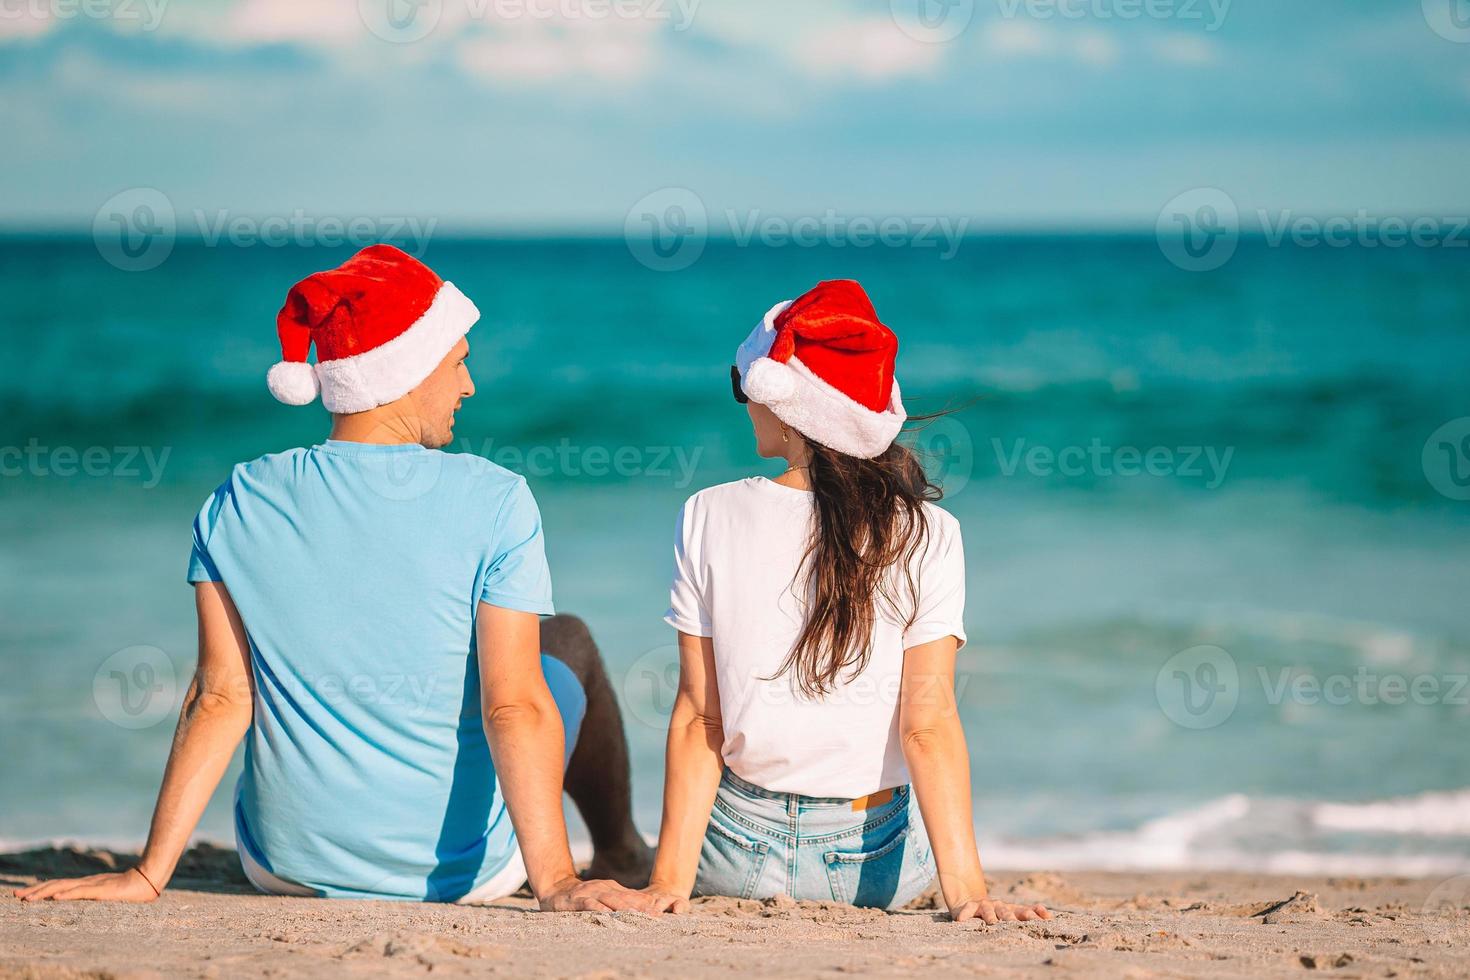 Natale contento coppia nel Santa cappelli su spiaggia vacanza foto